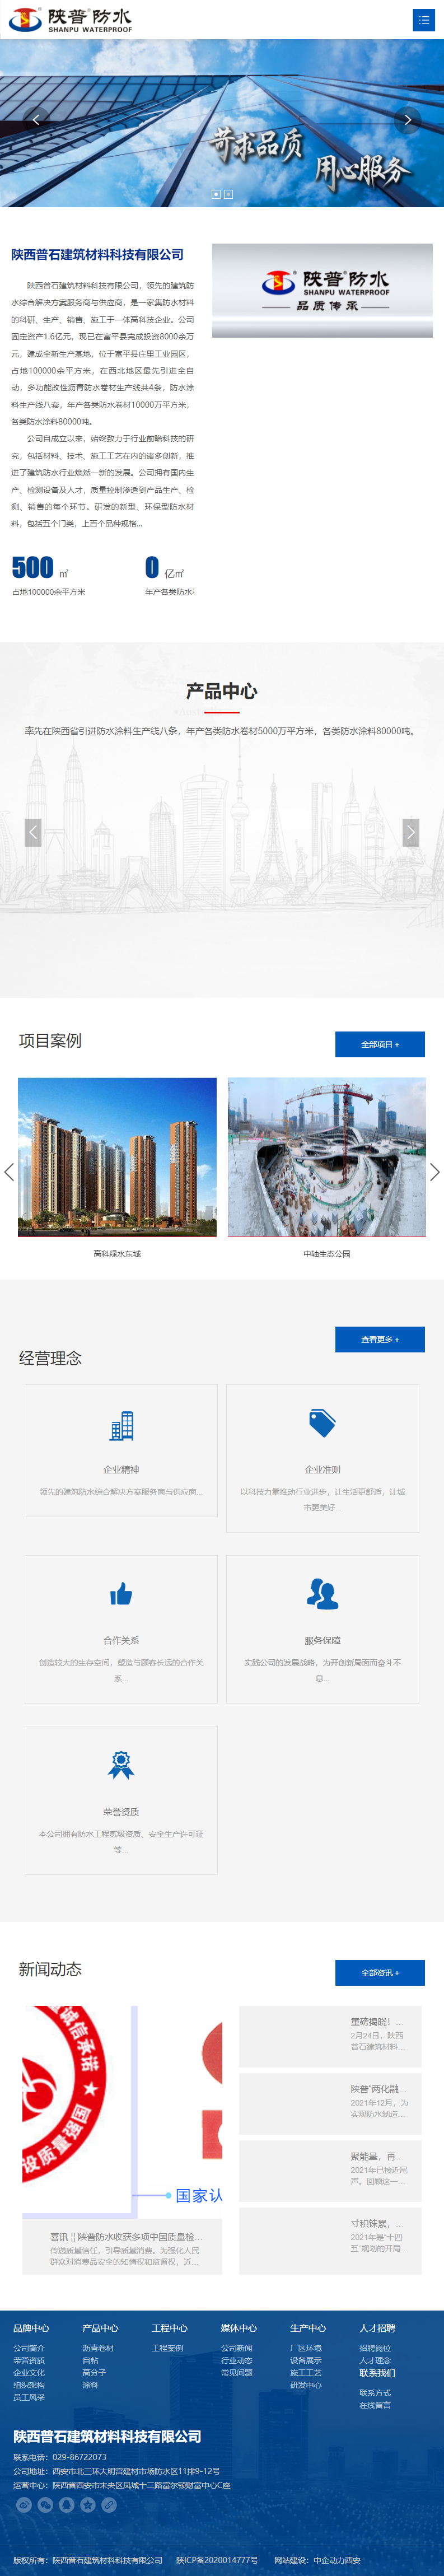 陕西普石建筑材料科技有限公司网站案例